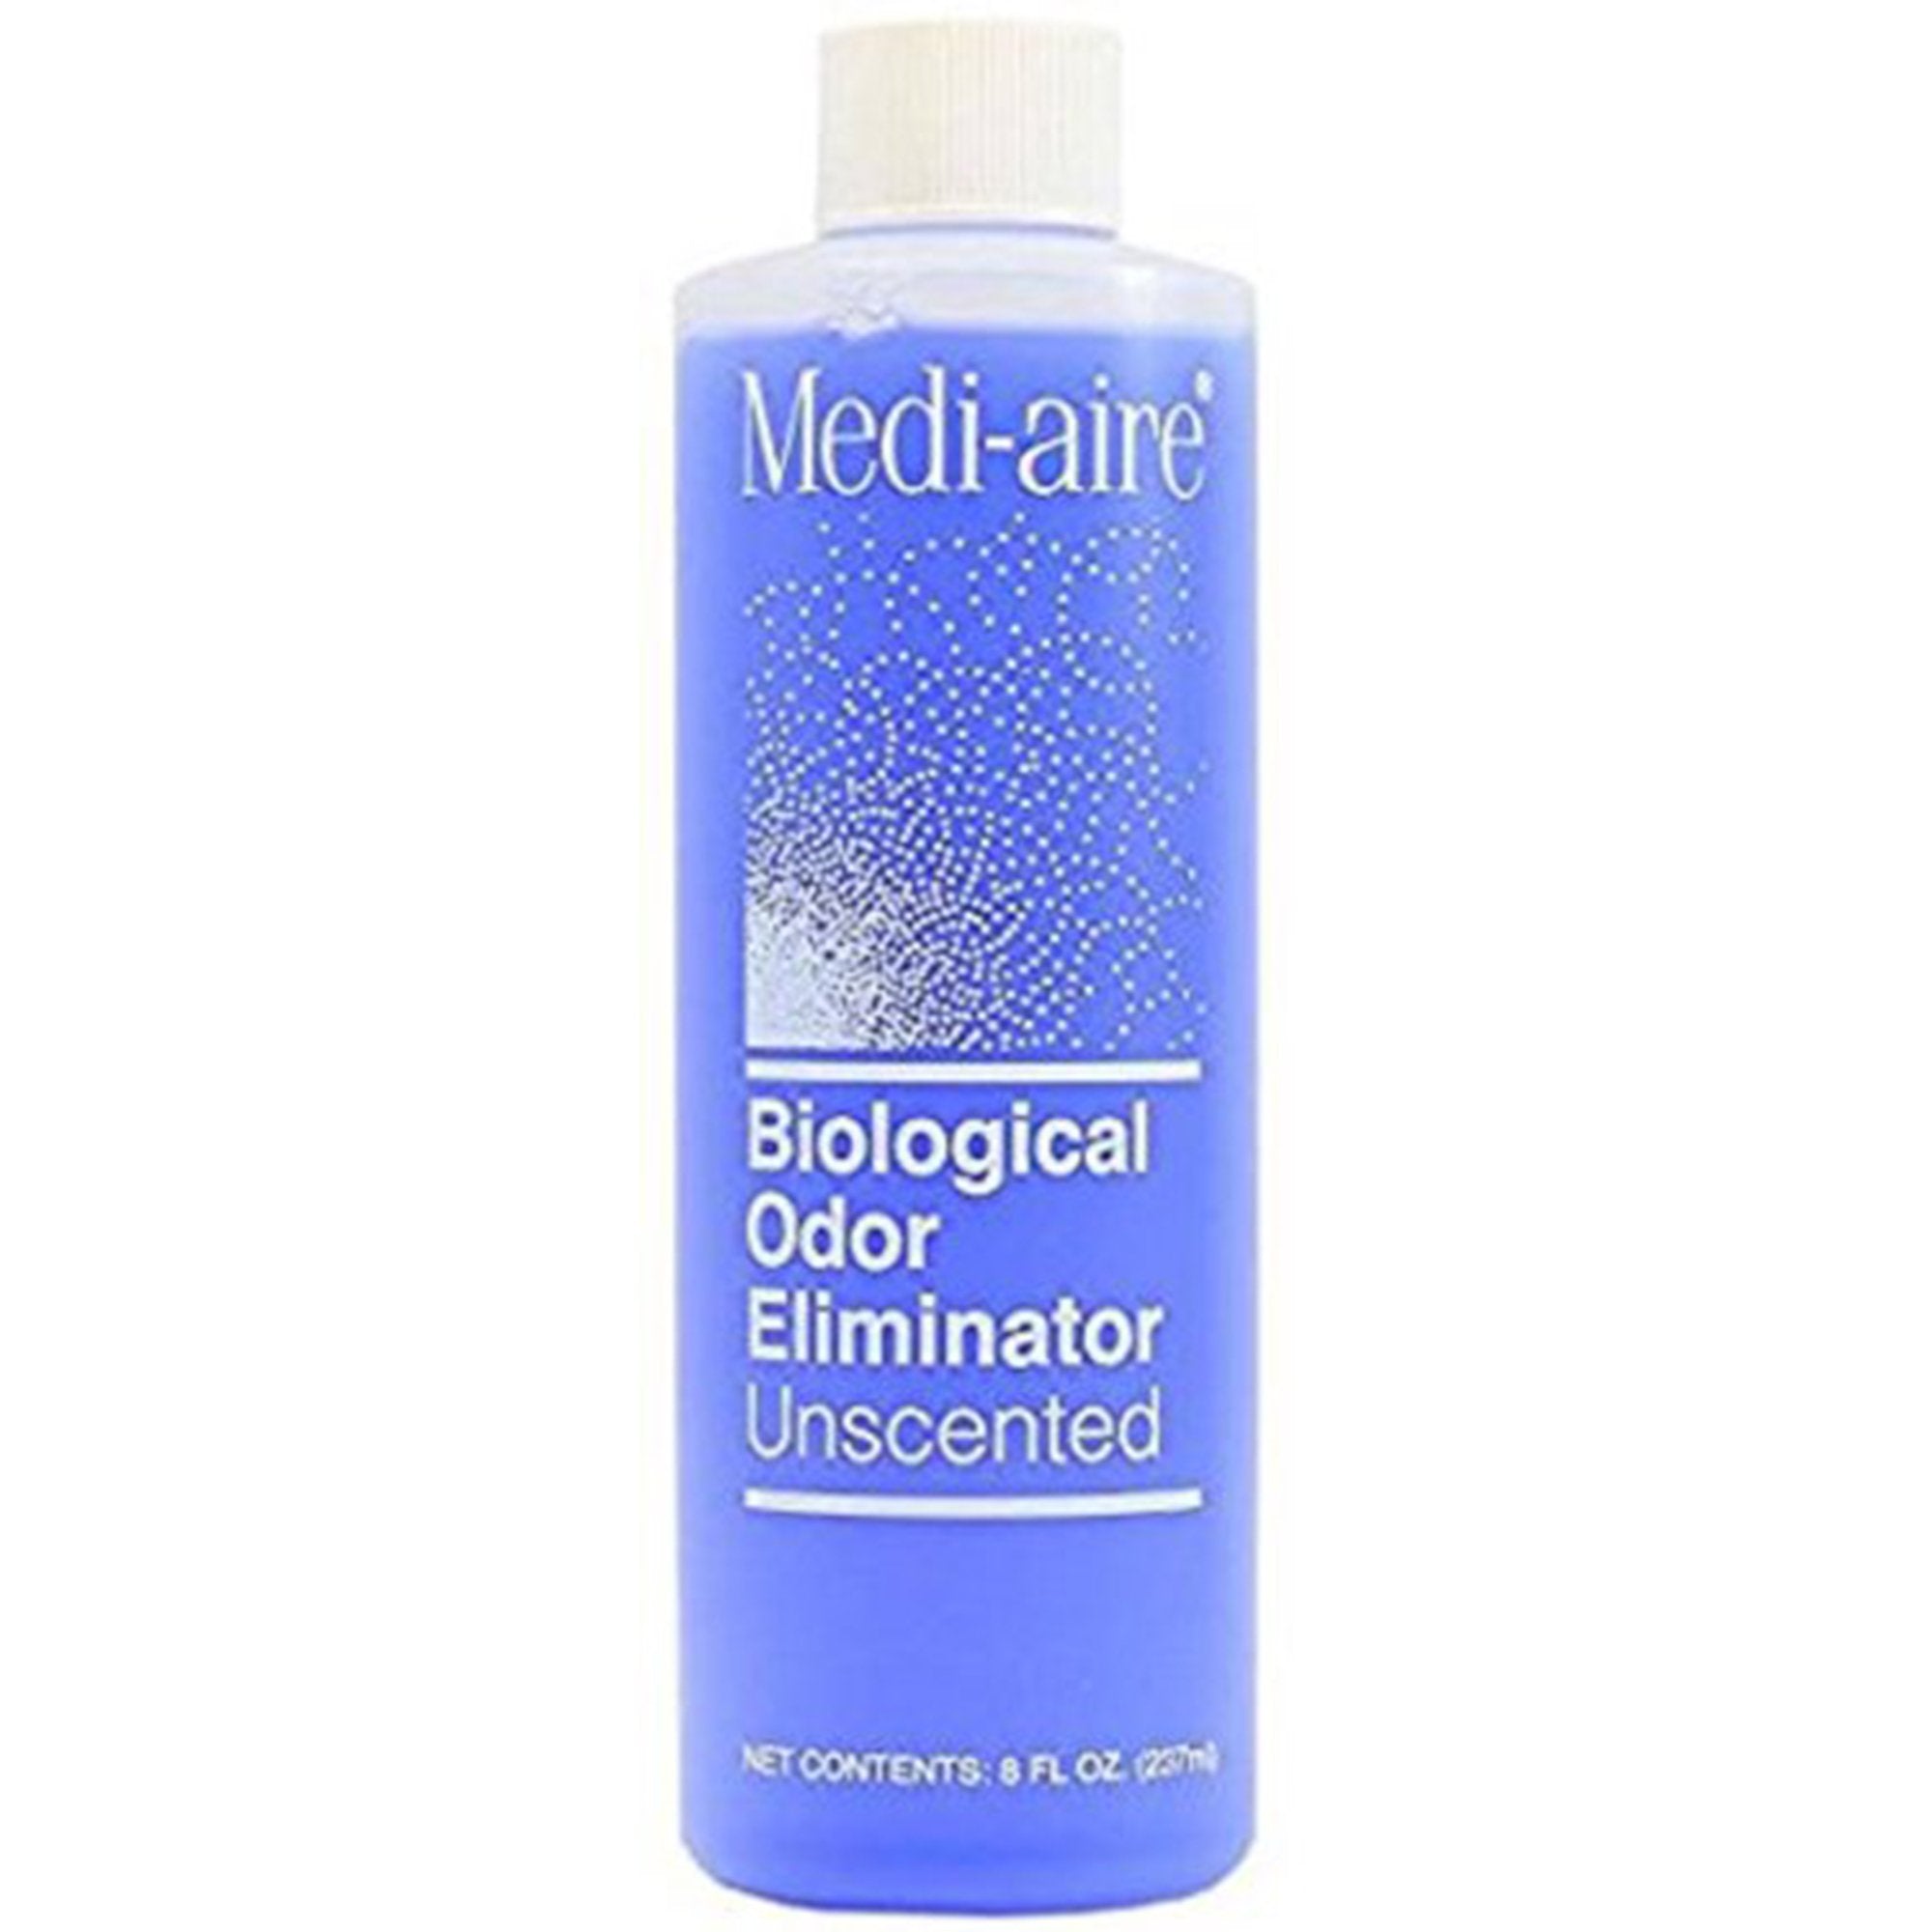 Deodorizer Medi-aire Biological Odor Eliminator Liquid 8 oz. Bottle Unscented